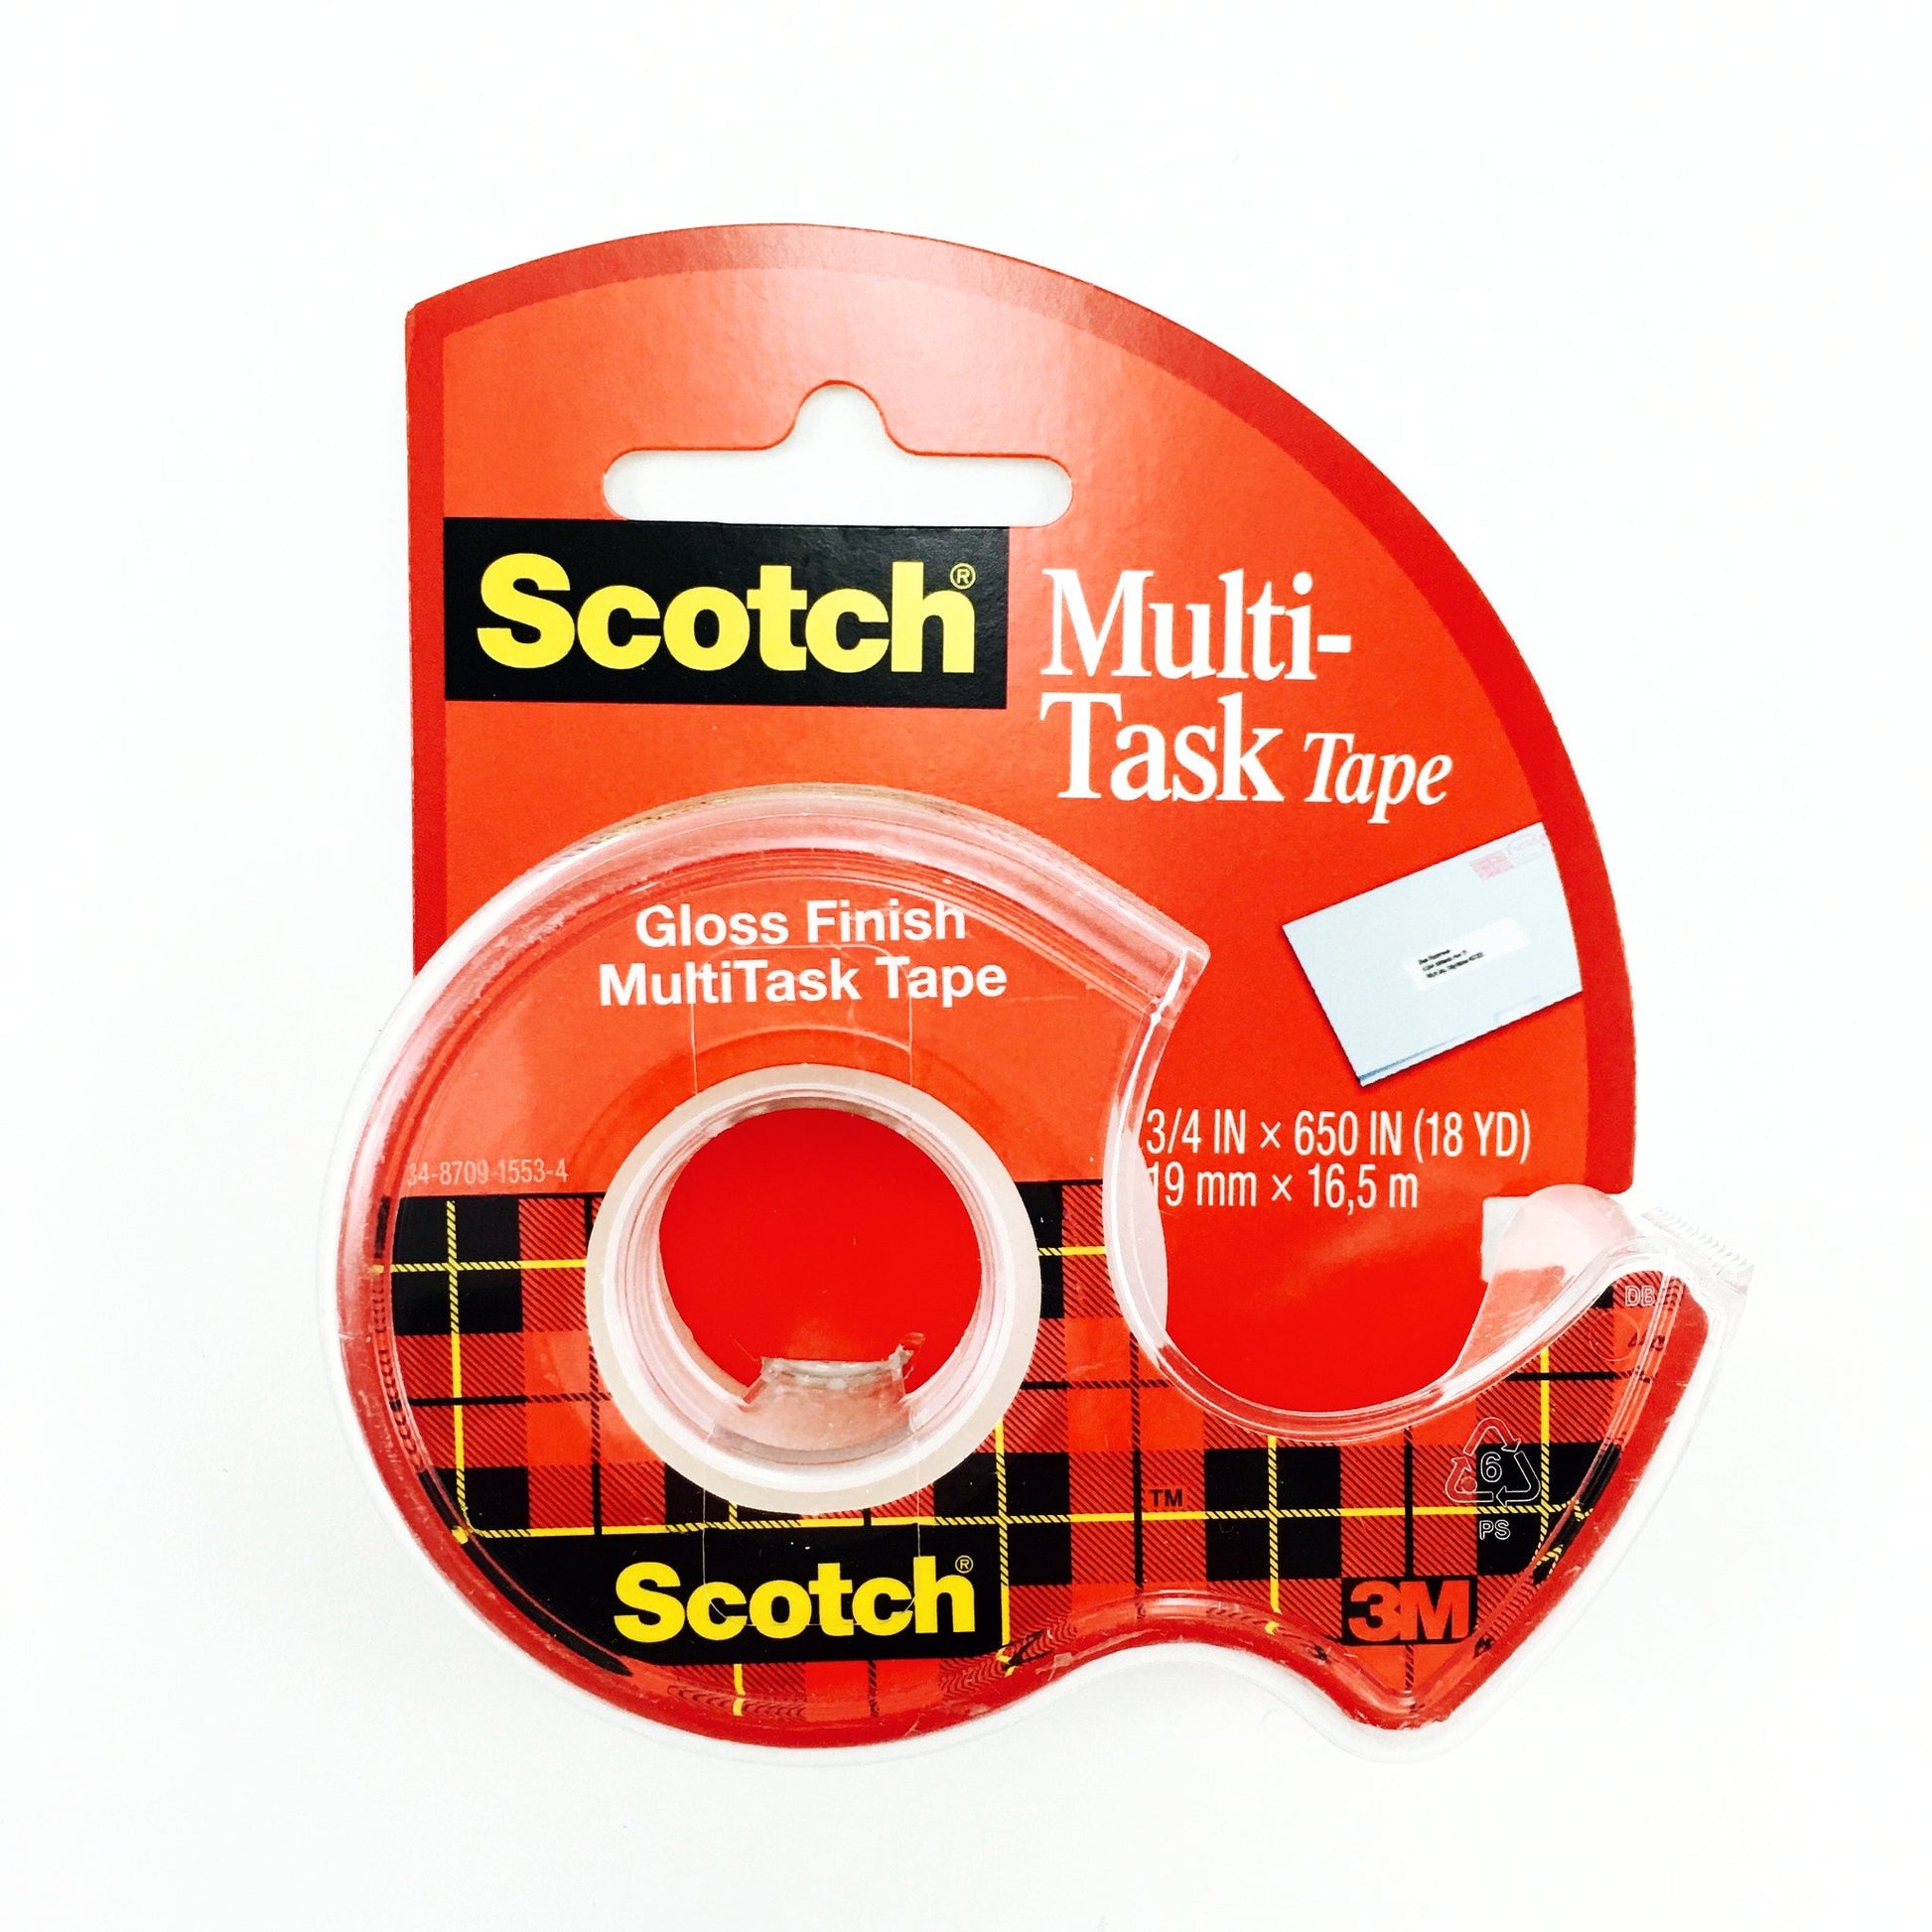 Scotch Multi-Task Tape - 3/4 inch x 18 yards - by Scotch - K. A. Artist Shop